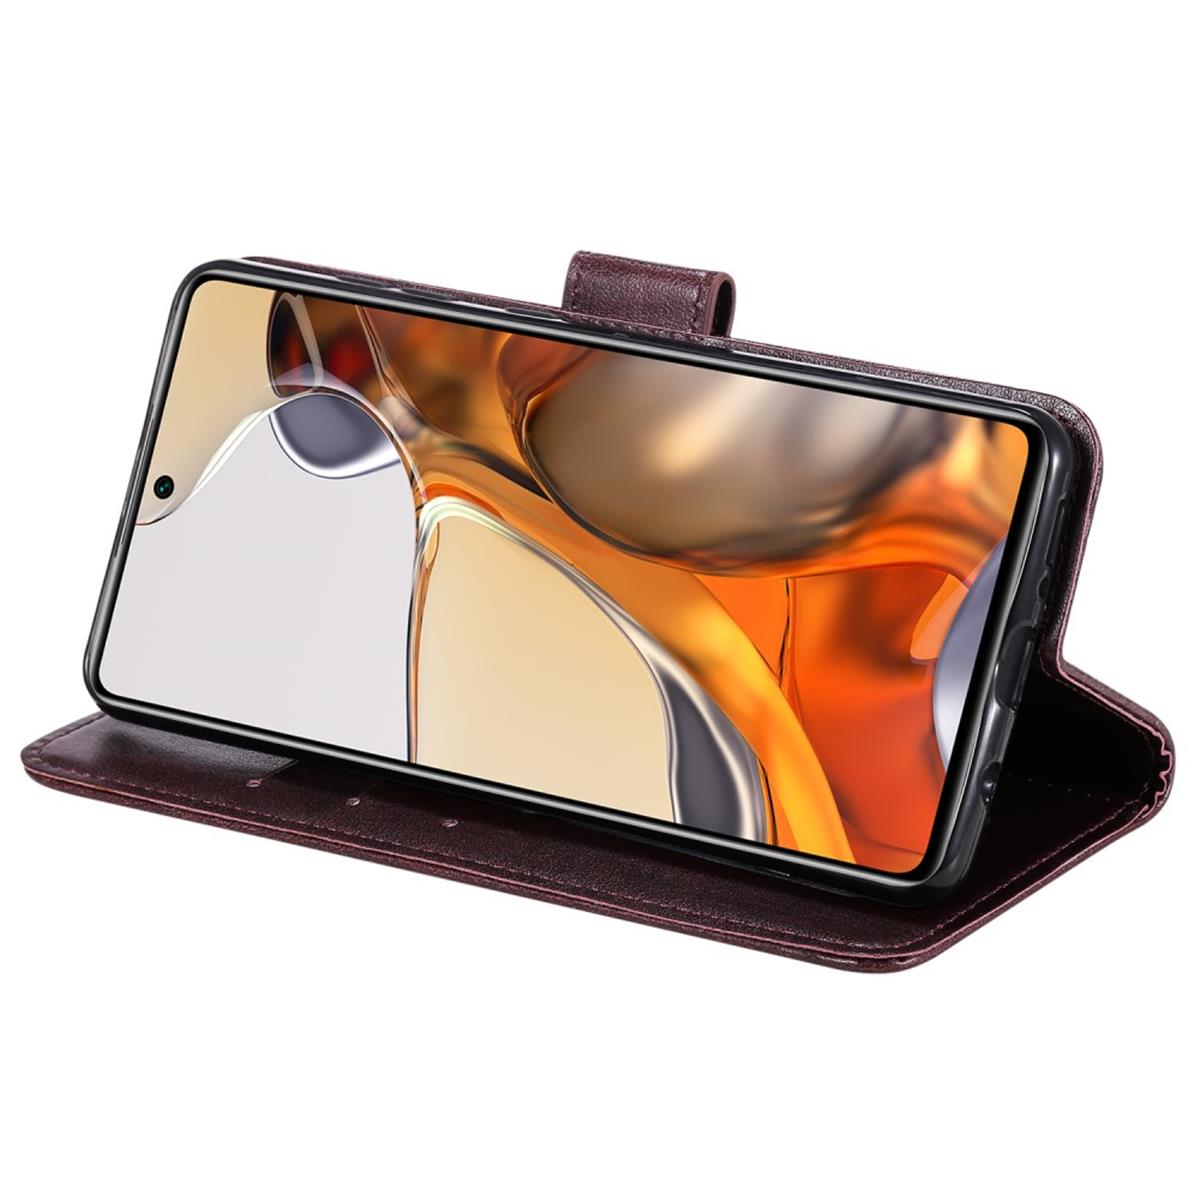 Hülle für Xiaomi 11T/11T Pro Handy Tasche Flip Case Cover Etui Mandala Braun